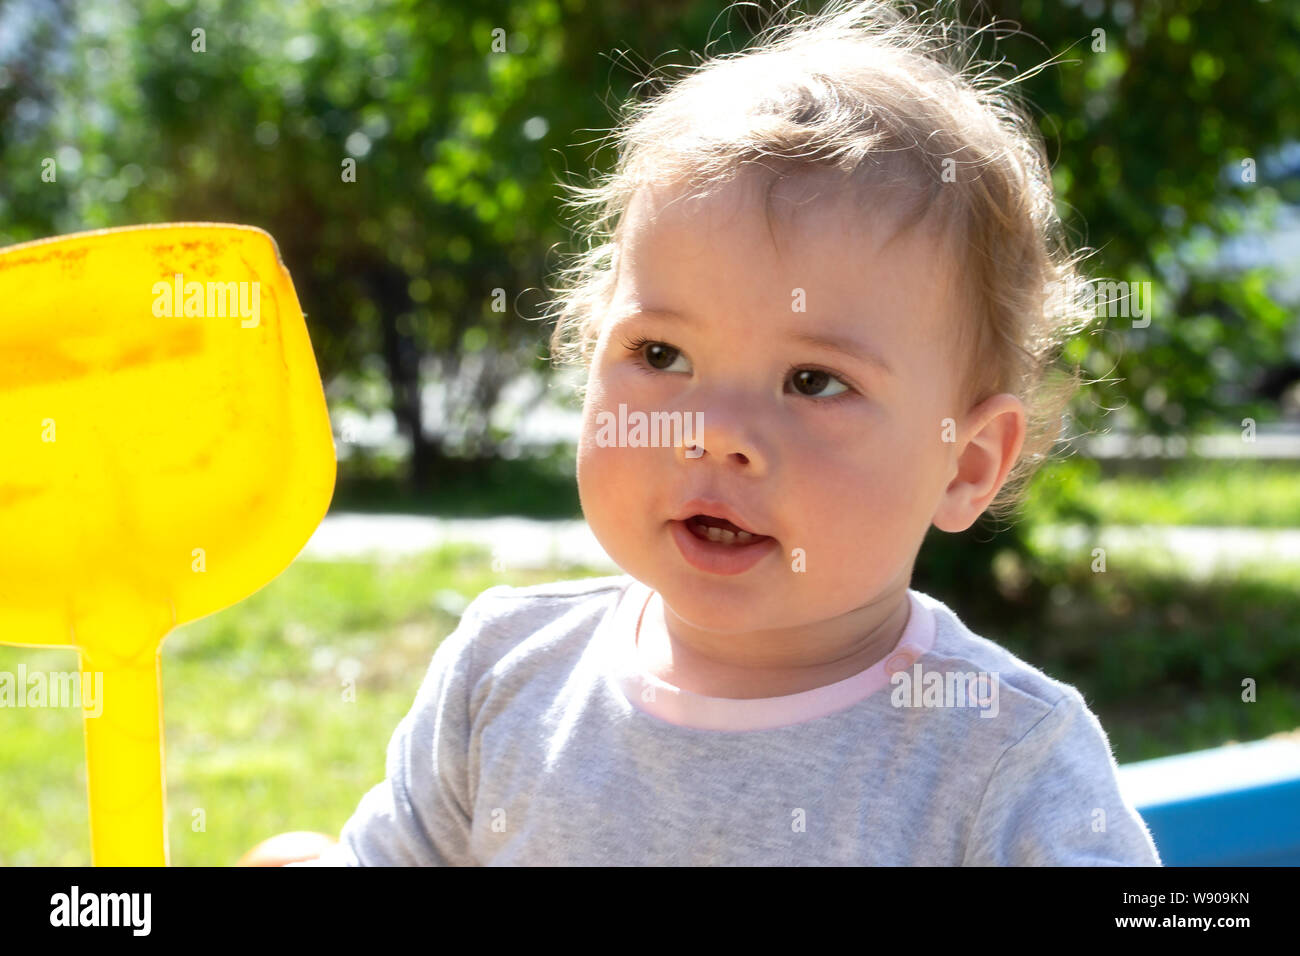 Ritratto di un po' di baby boy girl close-up. Il capretto con un giallo pala in plastica per una passeggiata nella natura bambino bambino in un maglione grigio passeggiate nel parco giochi Foto Stock